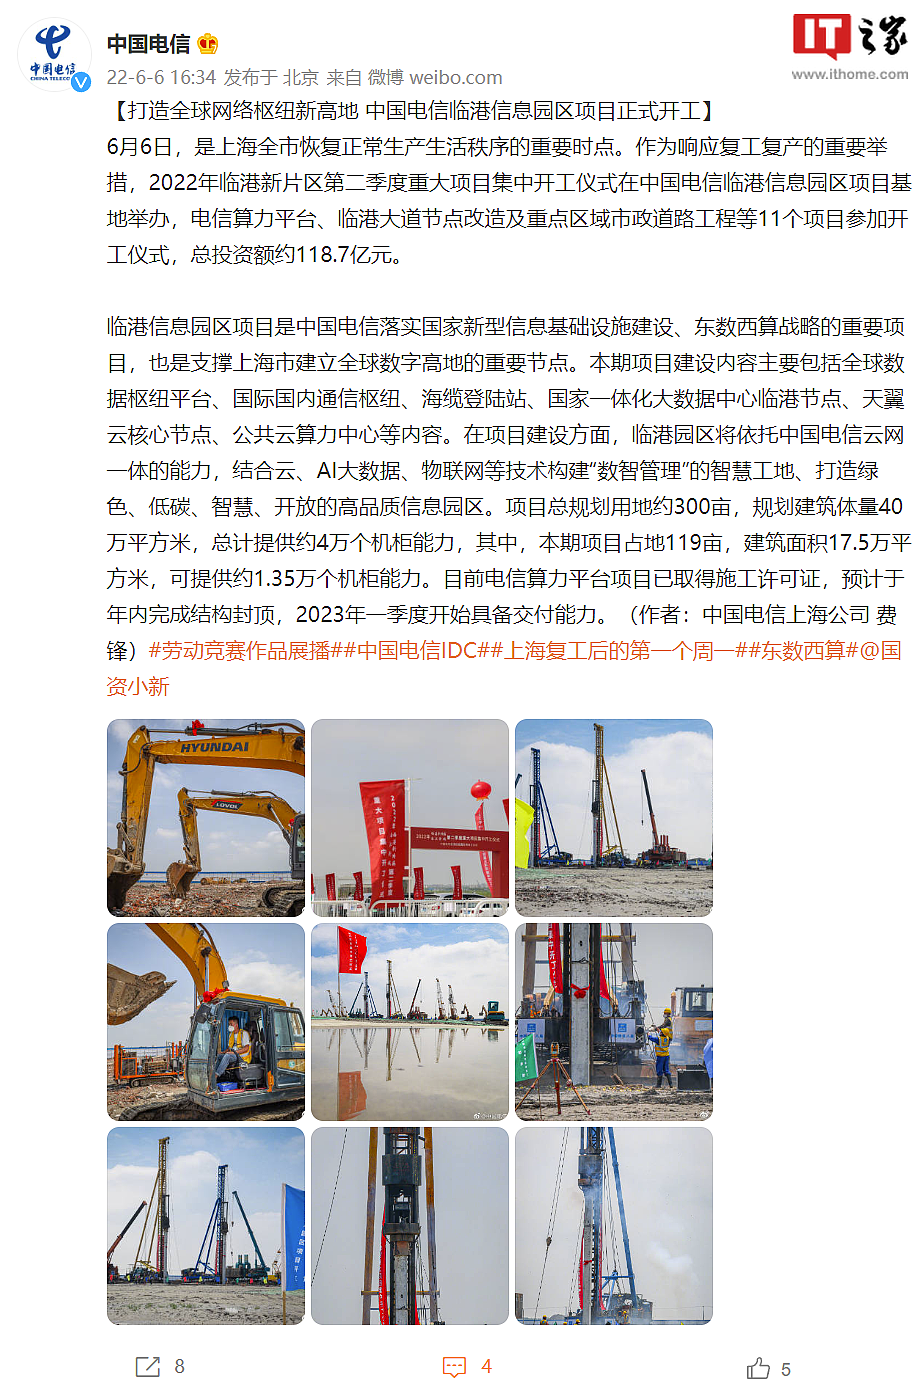 中国电信临港信息园区项目正式开工